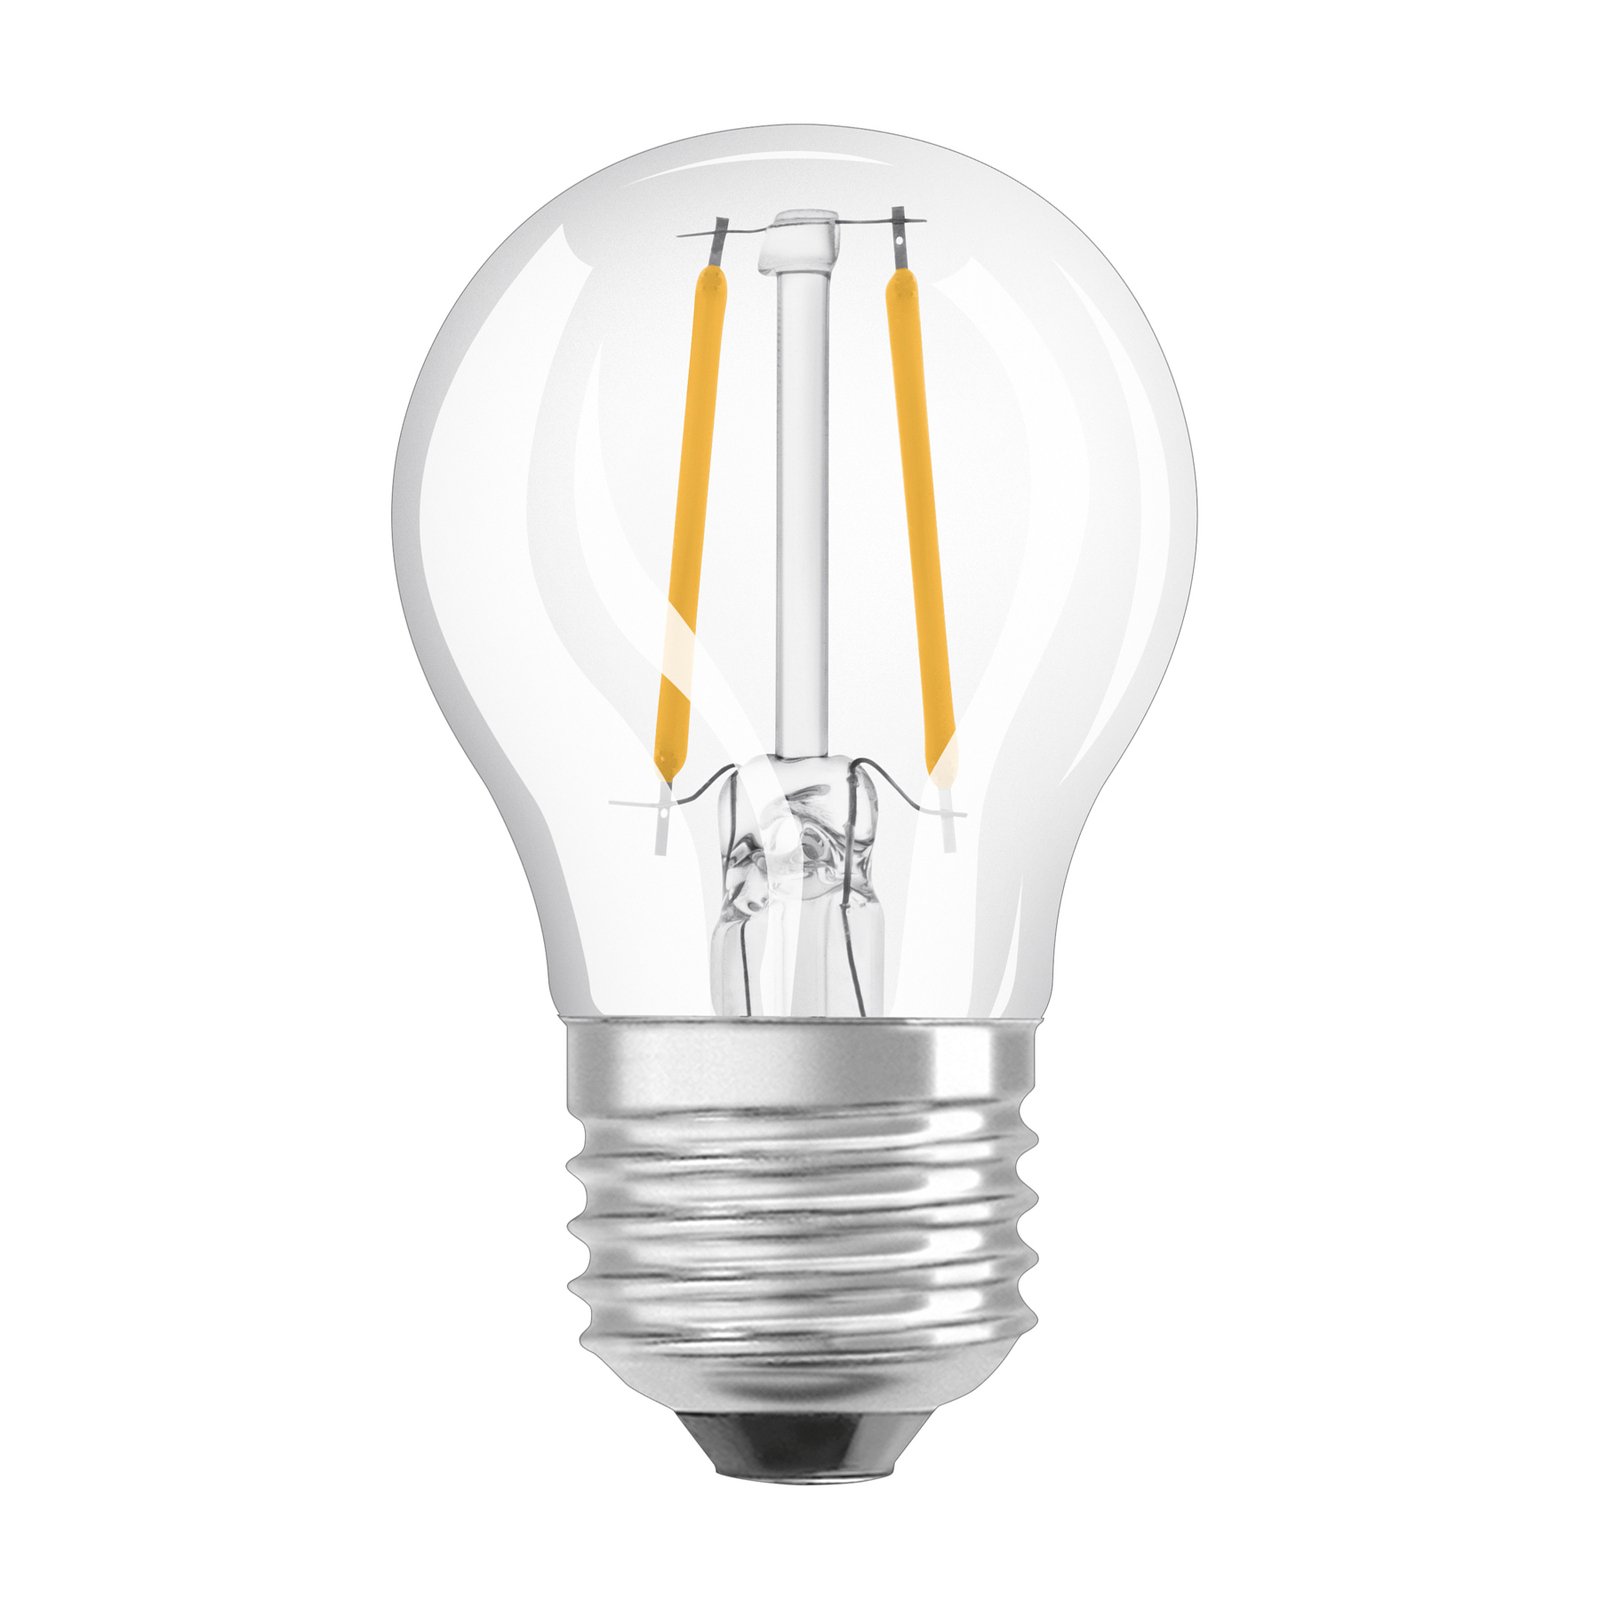 OSRAM LED druppellamp E27 2,5W 827 helder